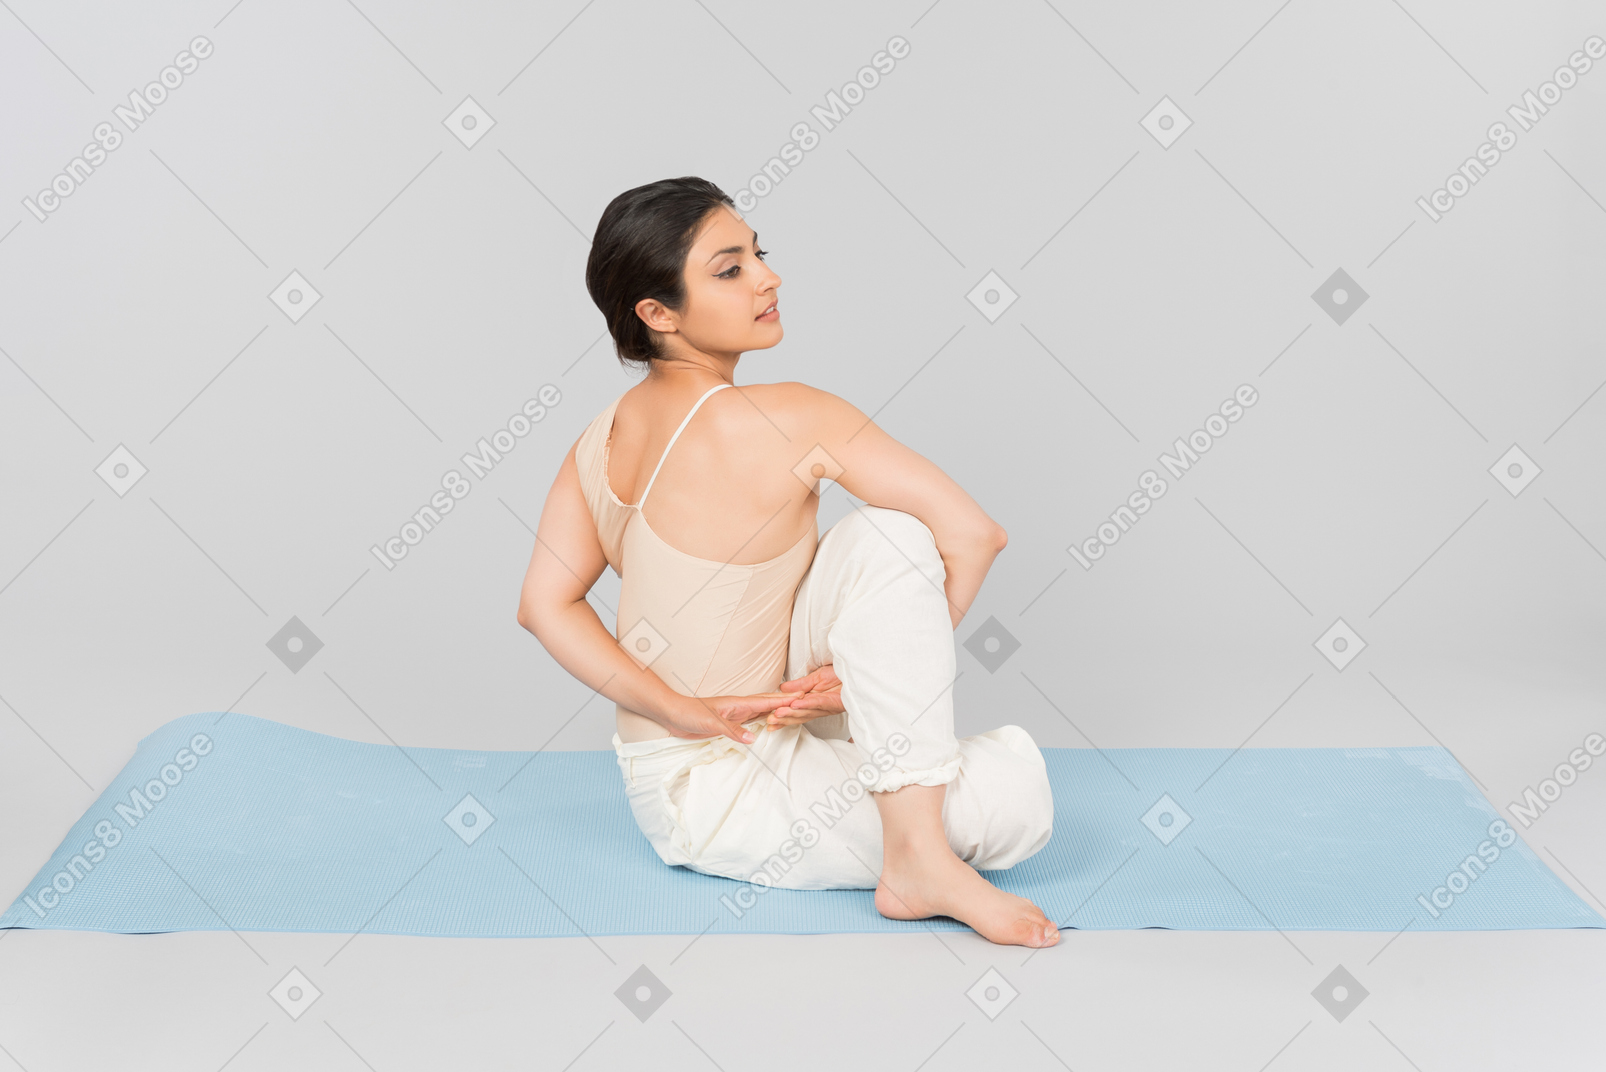 Giovane donna indiana che si siede sulla stuoia di yoga